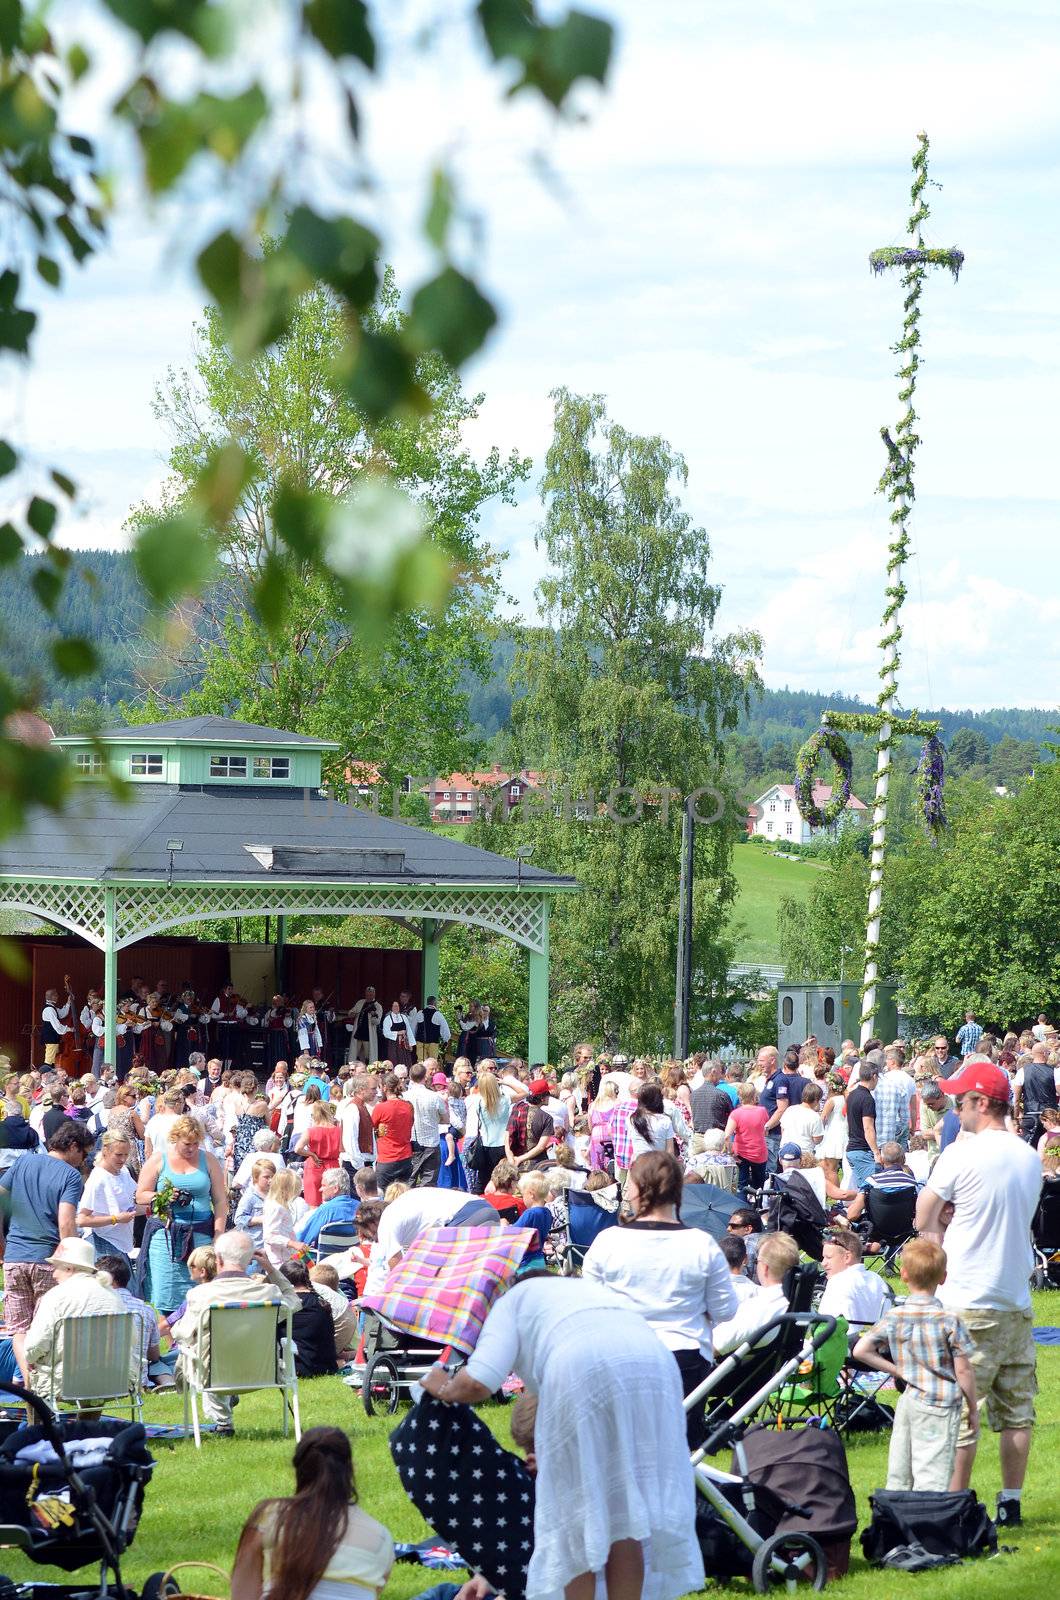 People celebrating Midsummer's Eve in Järvsö Sweden